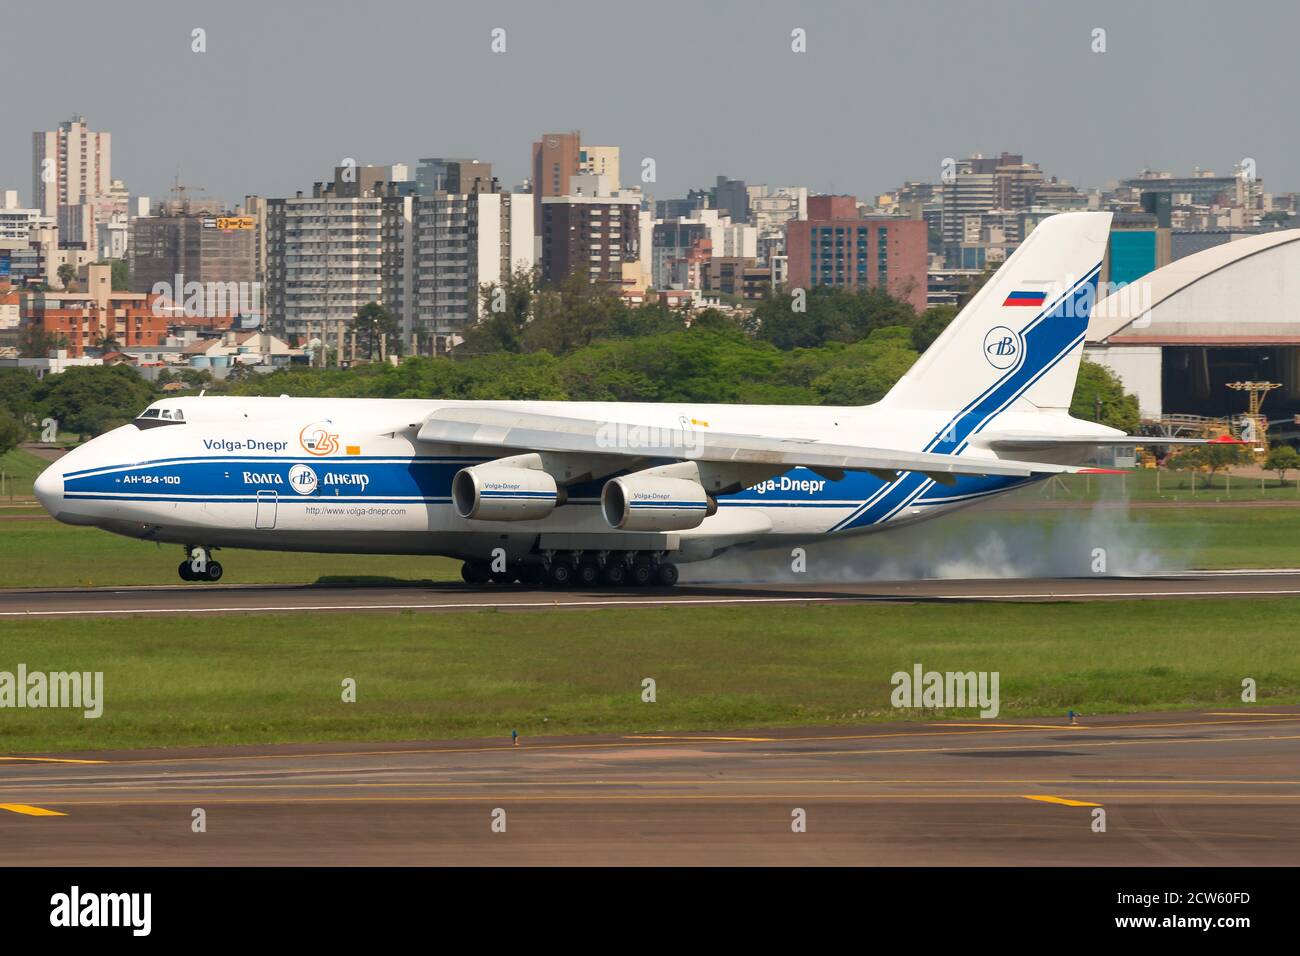 Volga Dnepr Airlines Antonov 124 débarquant à l'aéroport de Porto Alegre, Brésil. Énorme avion cargo an-124. RA-82047. Compagnie aérienne russe de fret avion soviétique. Banque D'Images